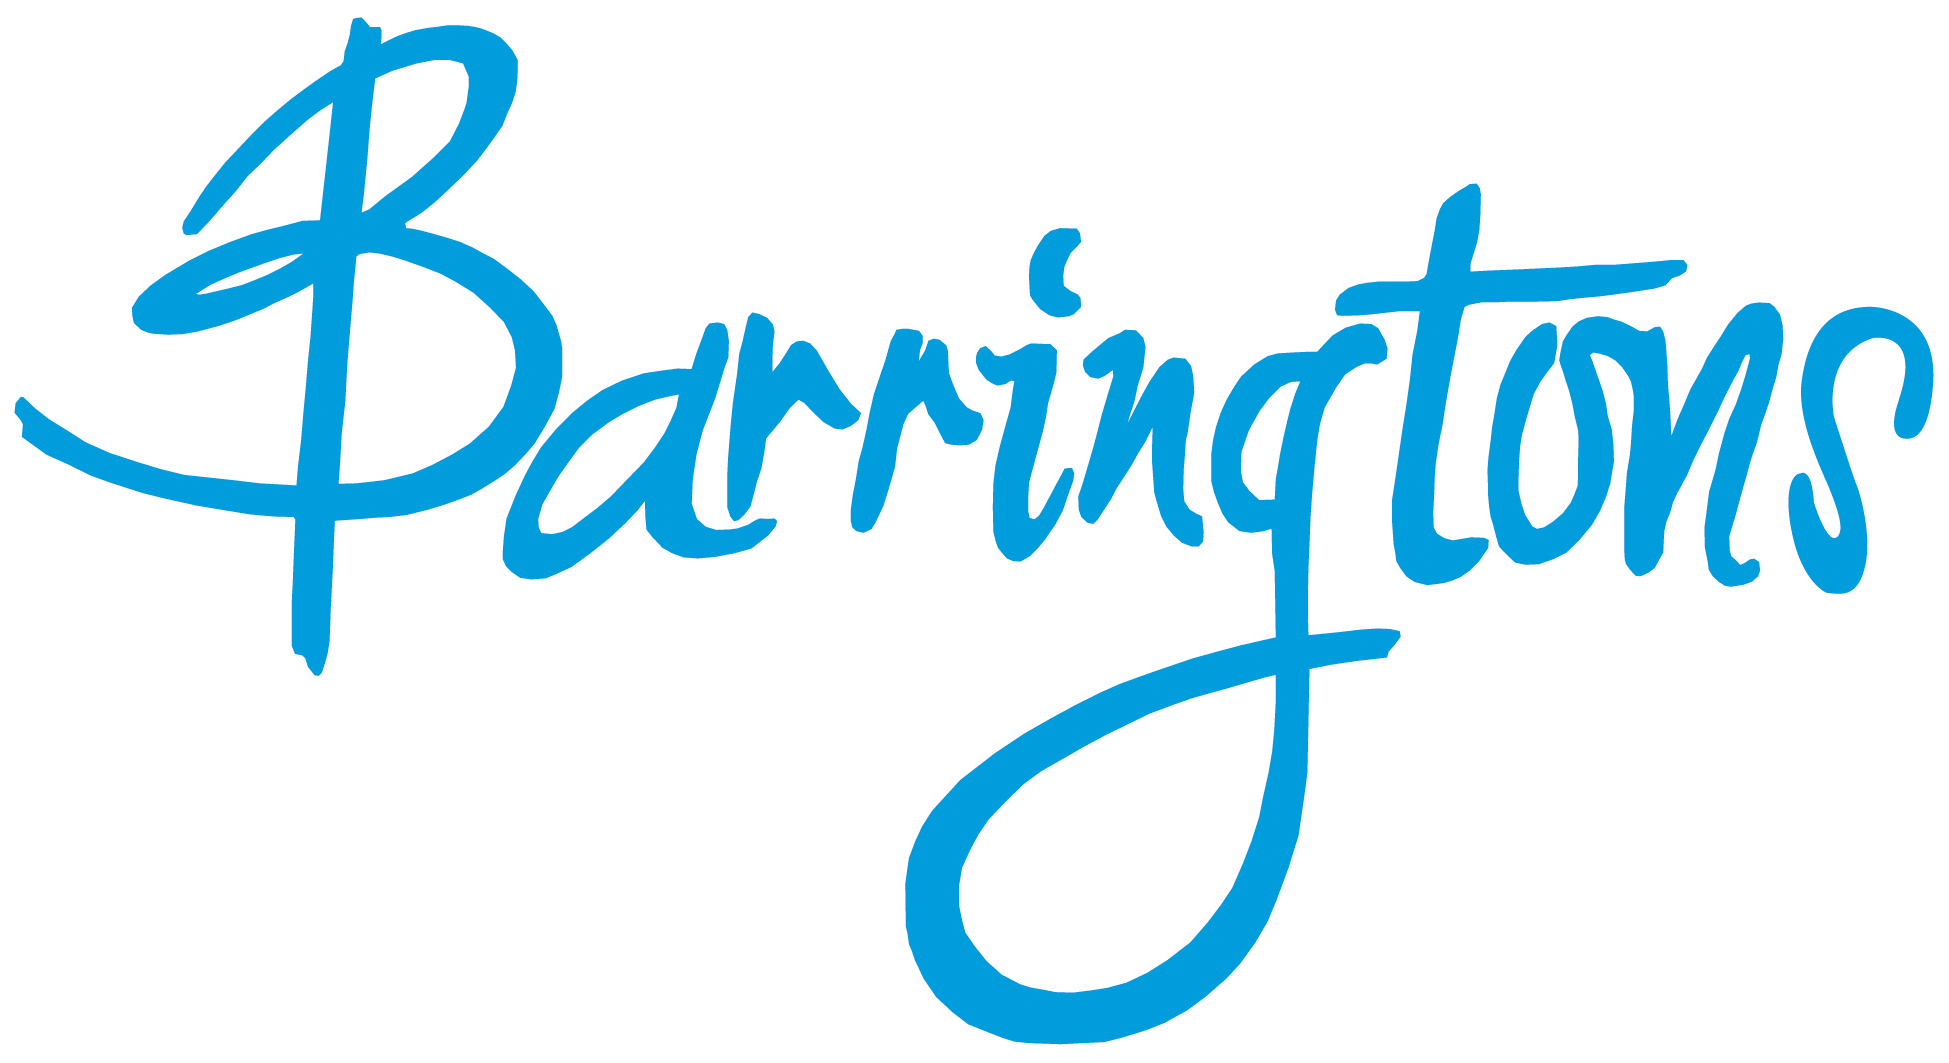 BarringtonsRGB Logo